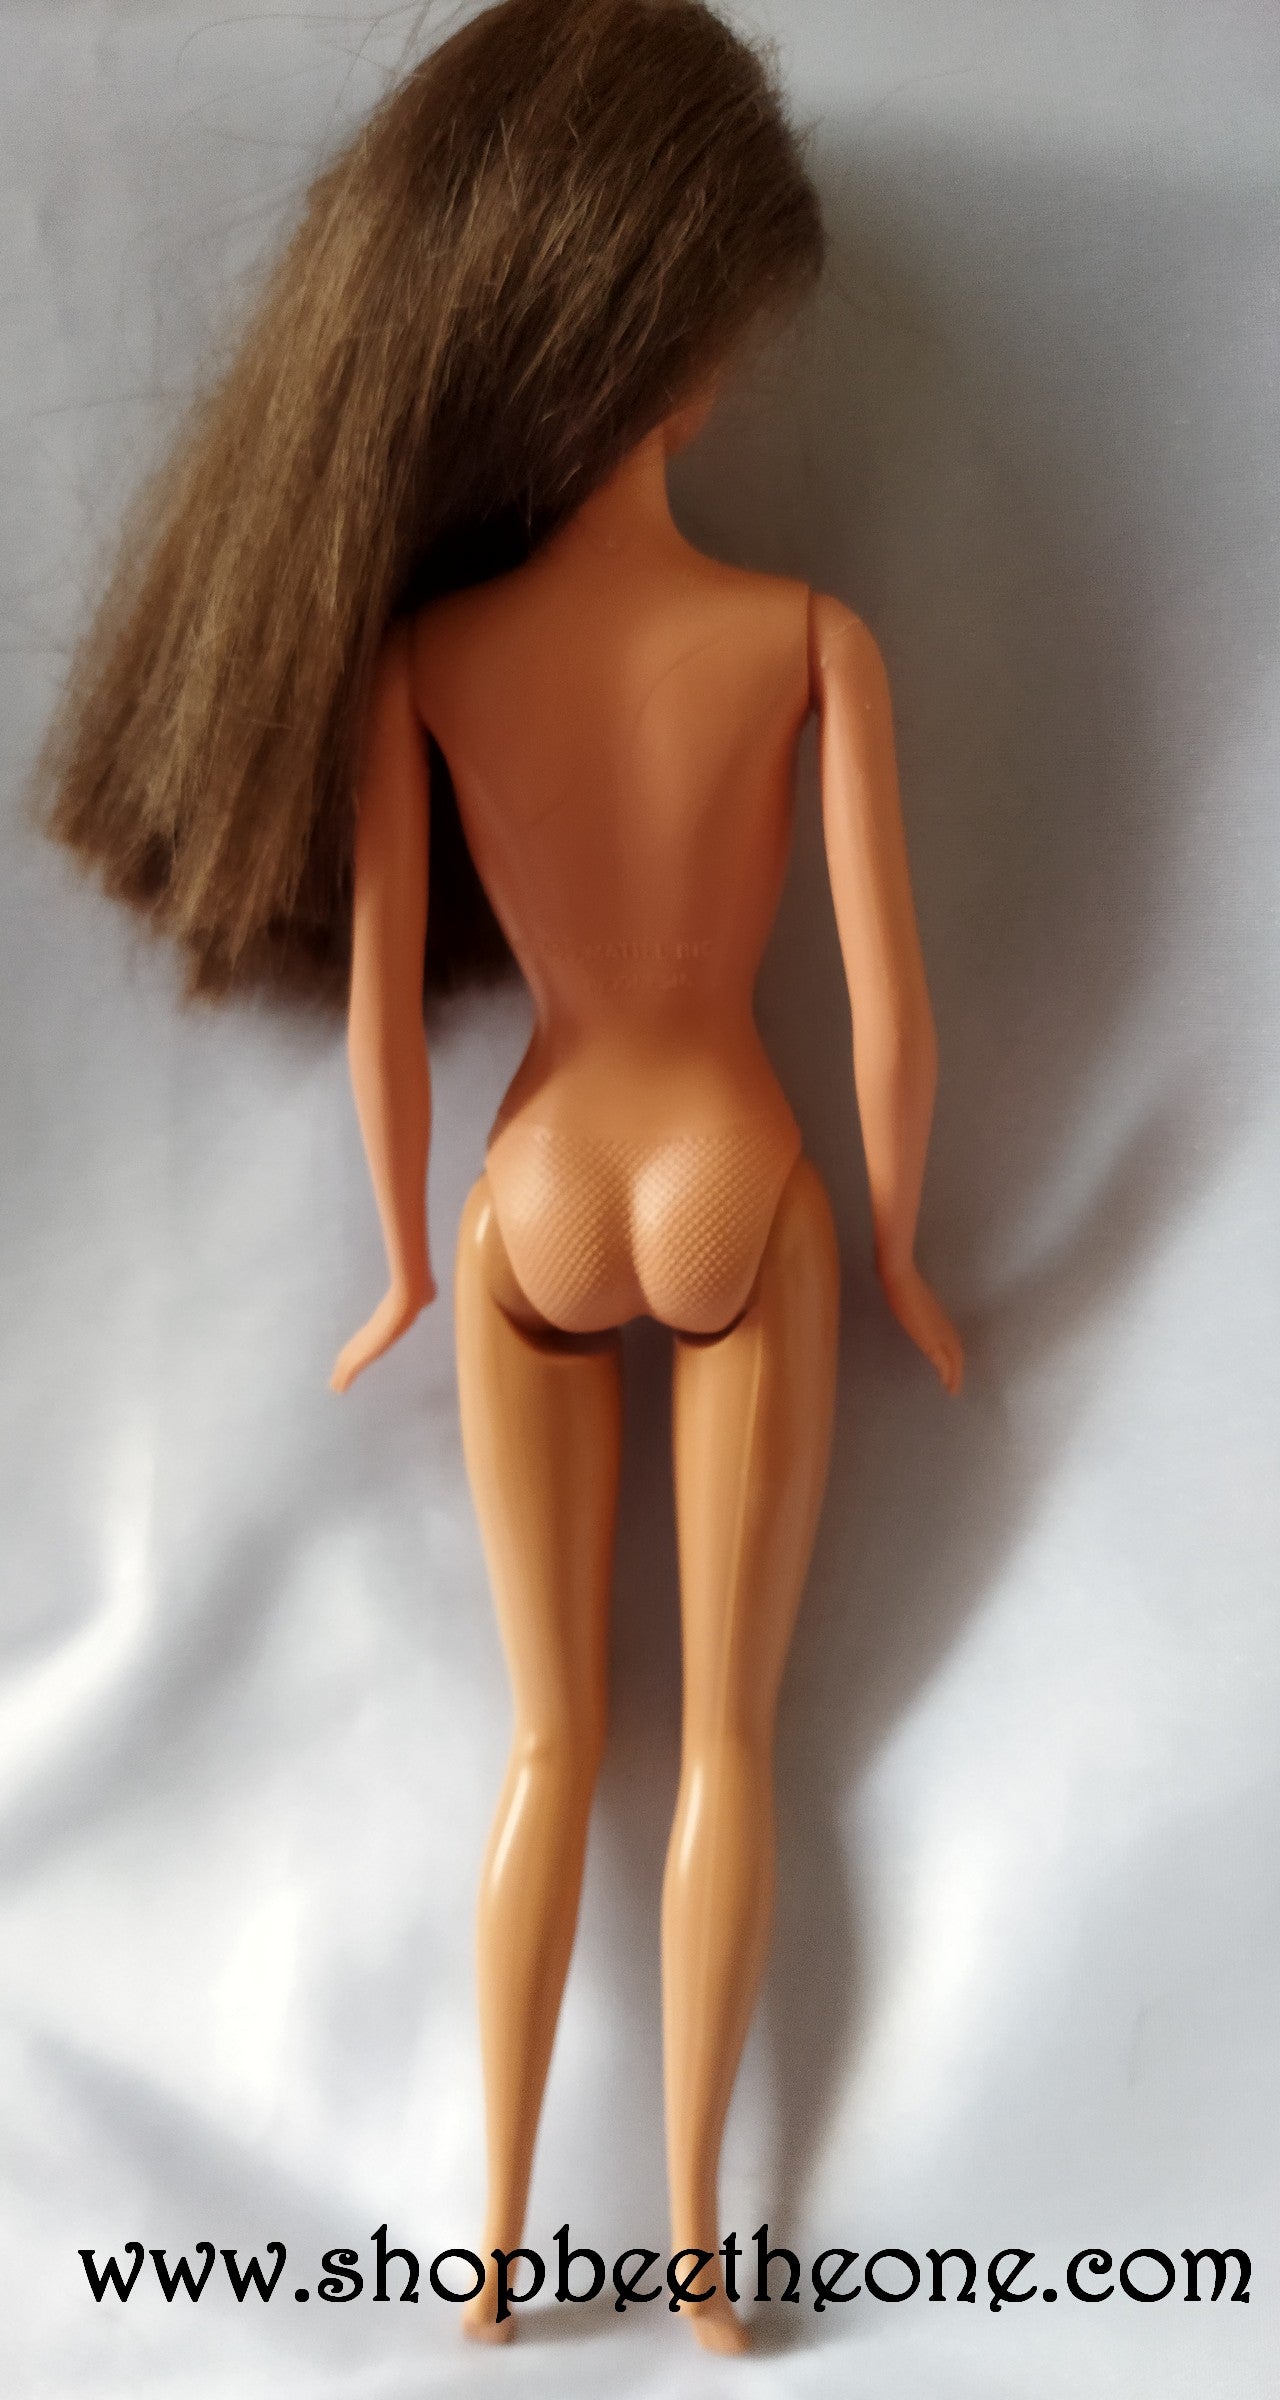 Teresa Dalmatien (Spot Scene) - Mattel 2001 - Poupée nue